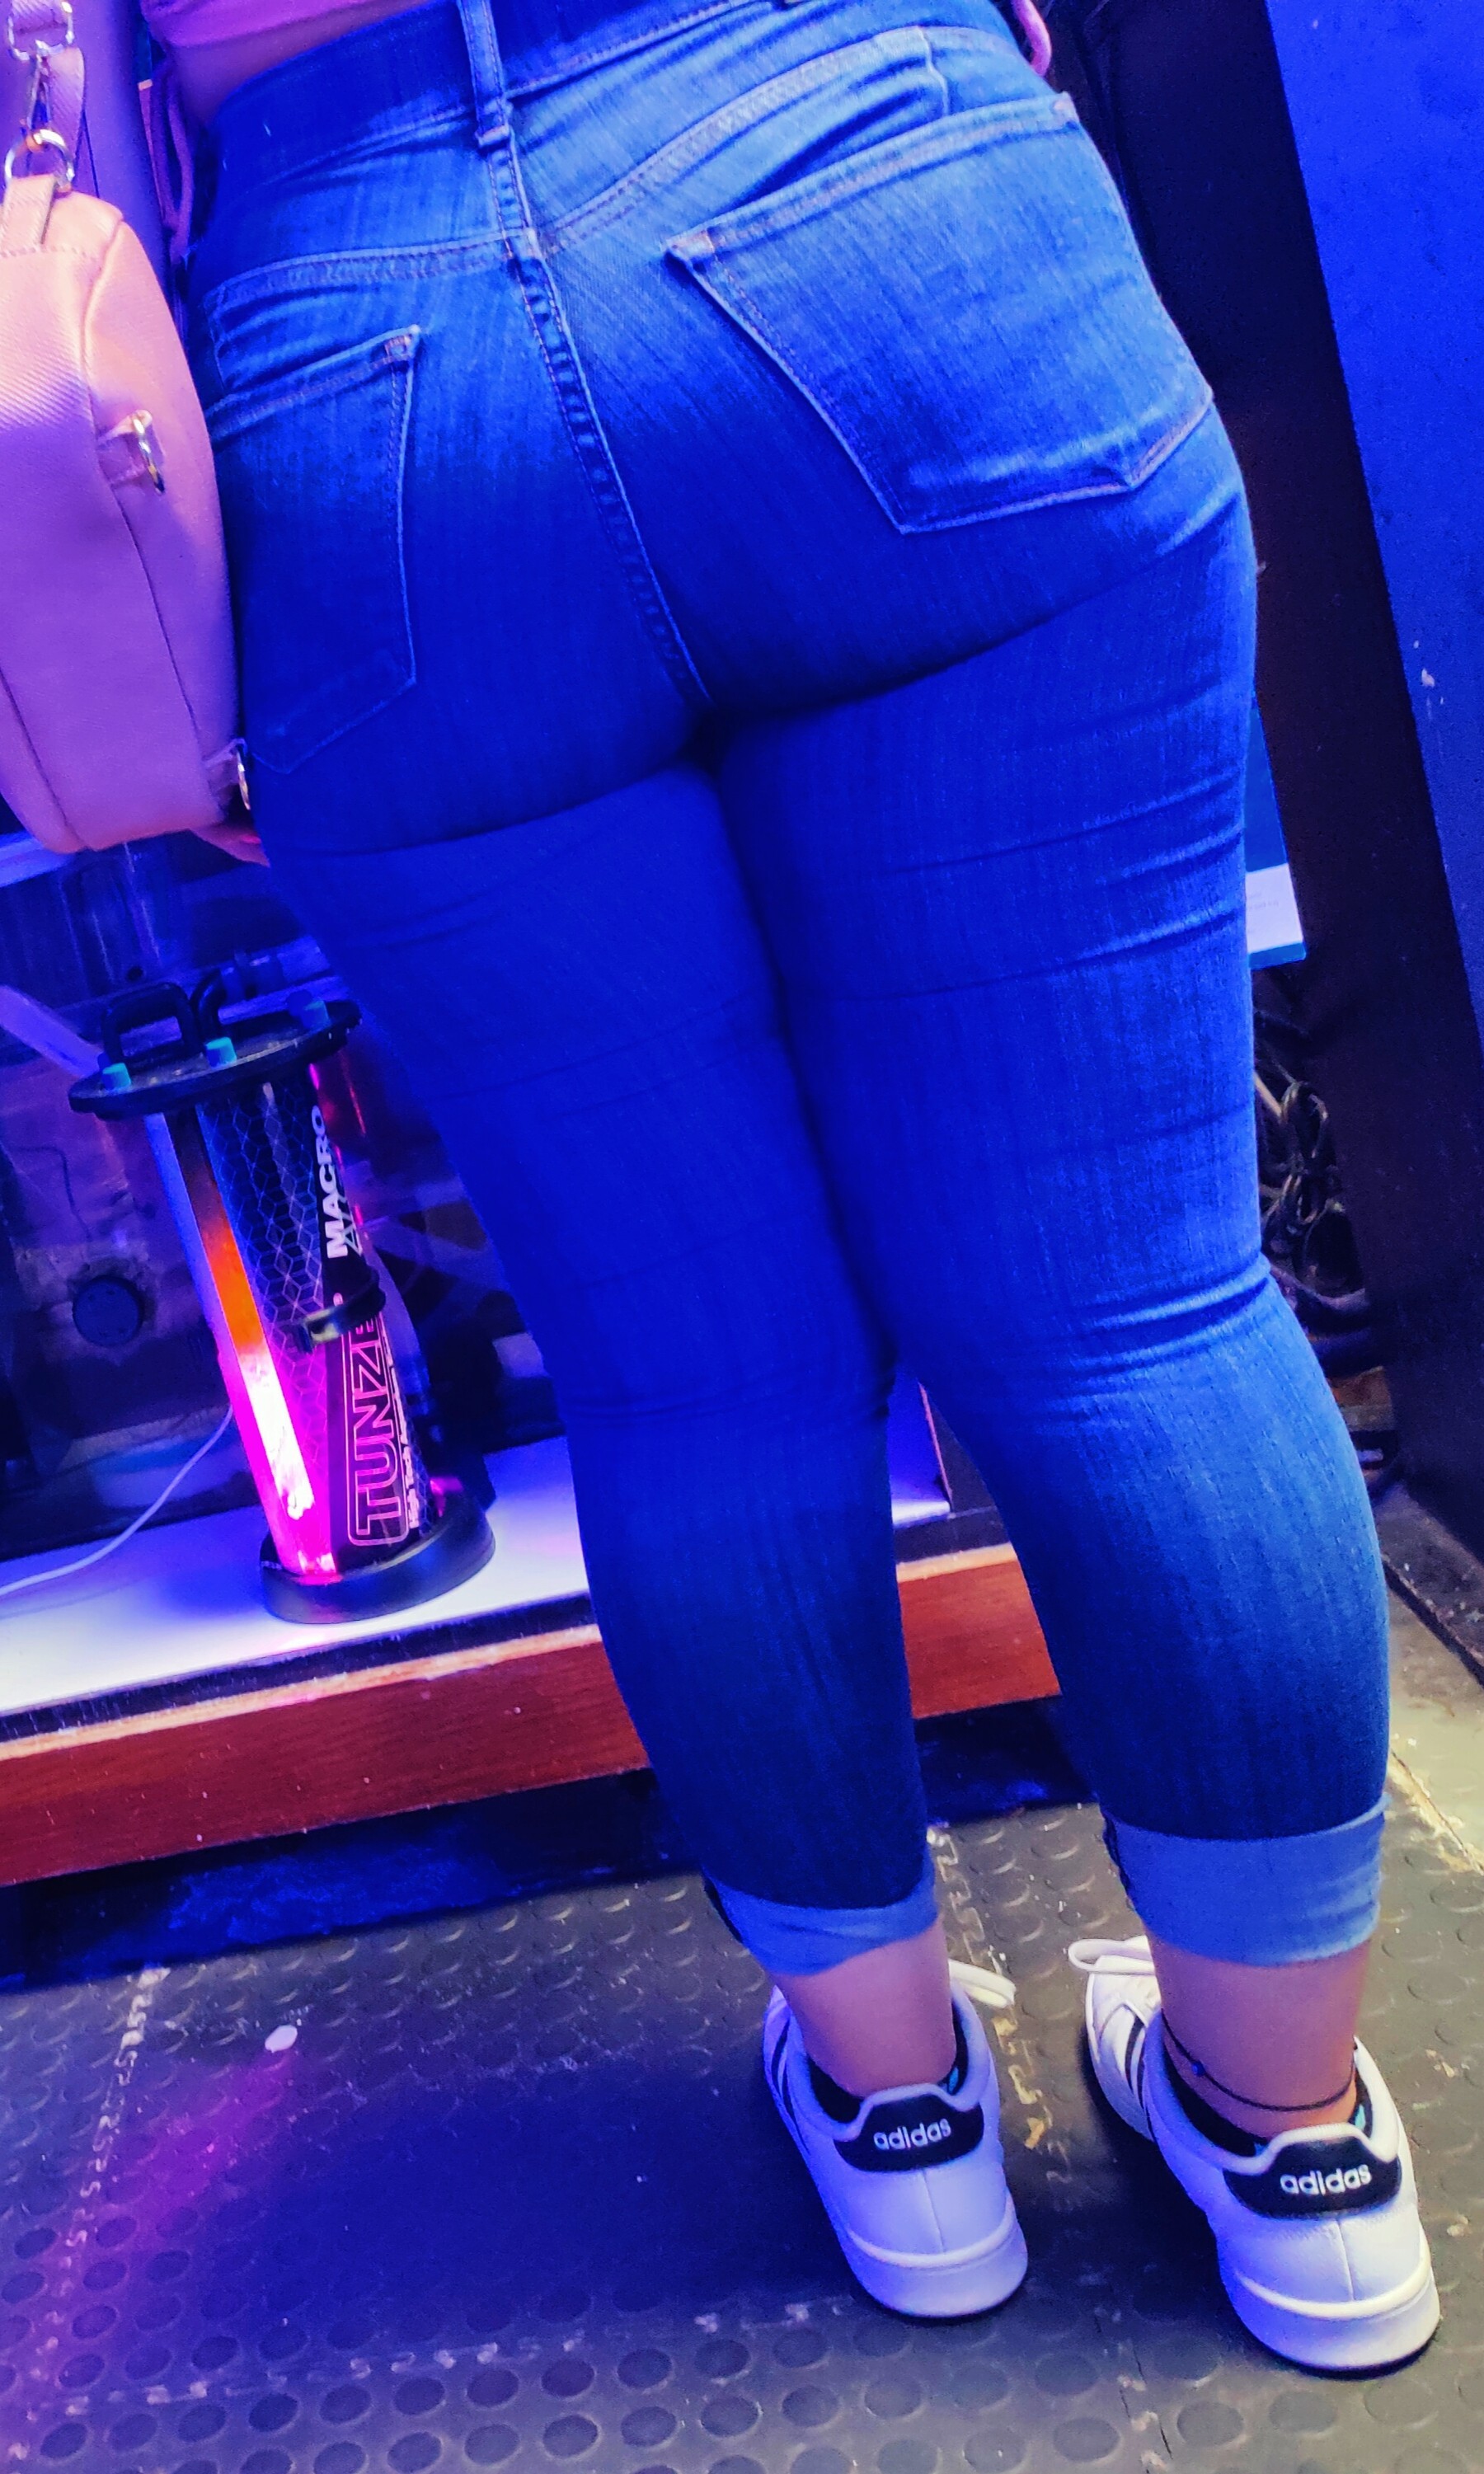 Nice Big Ass Latina Tight Jeans Forum